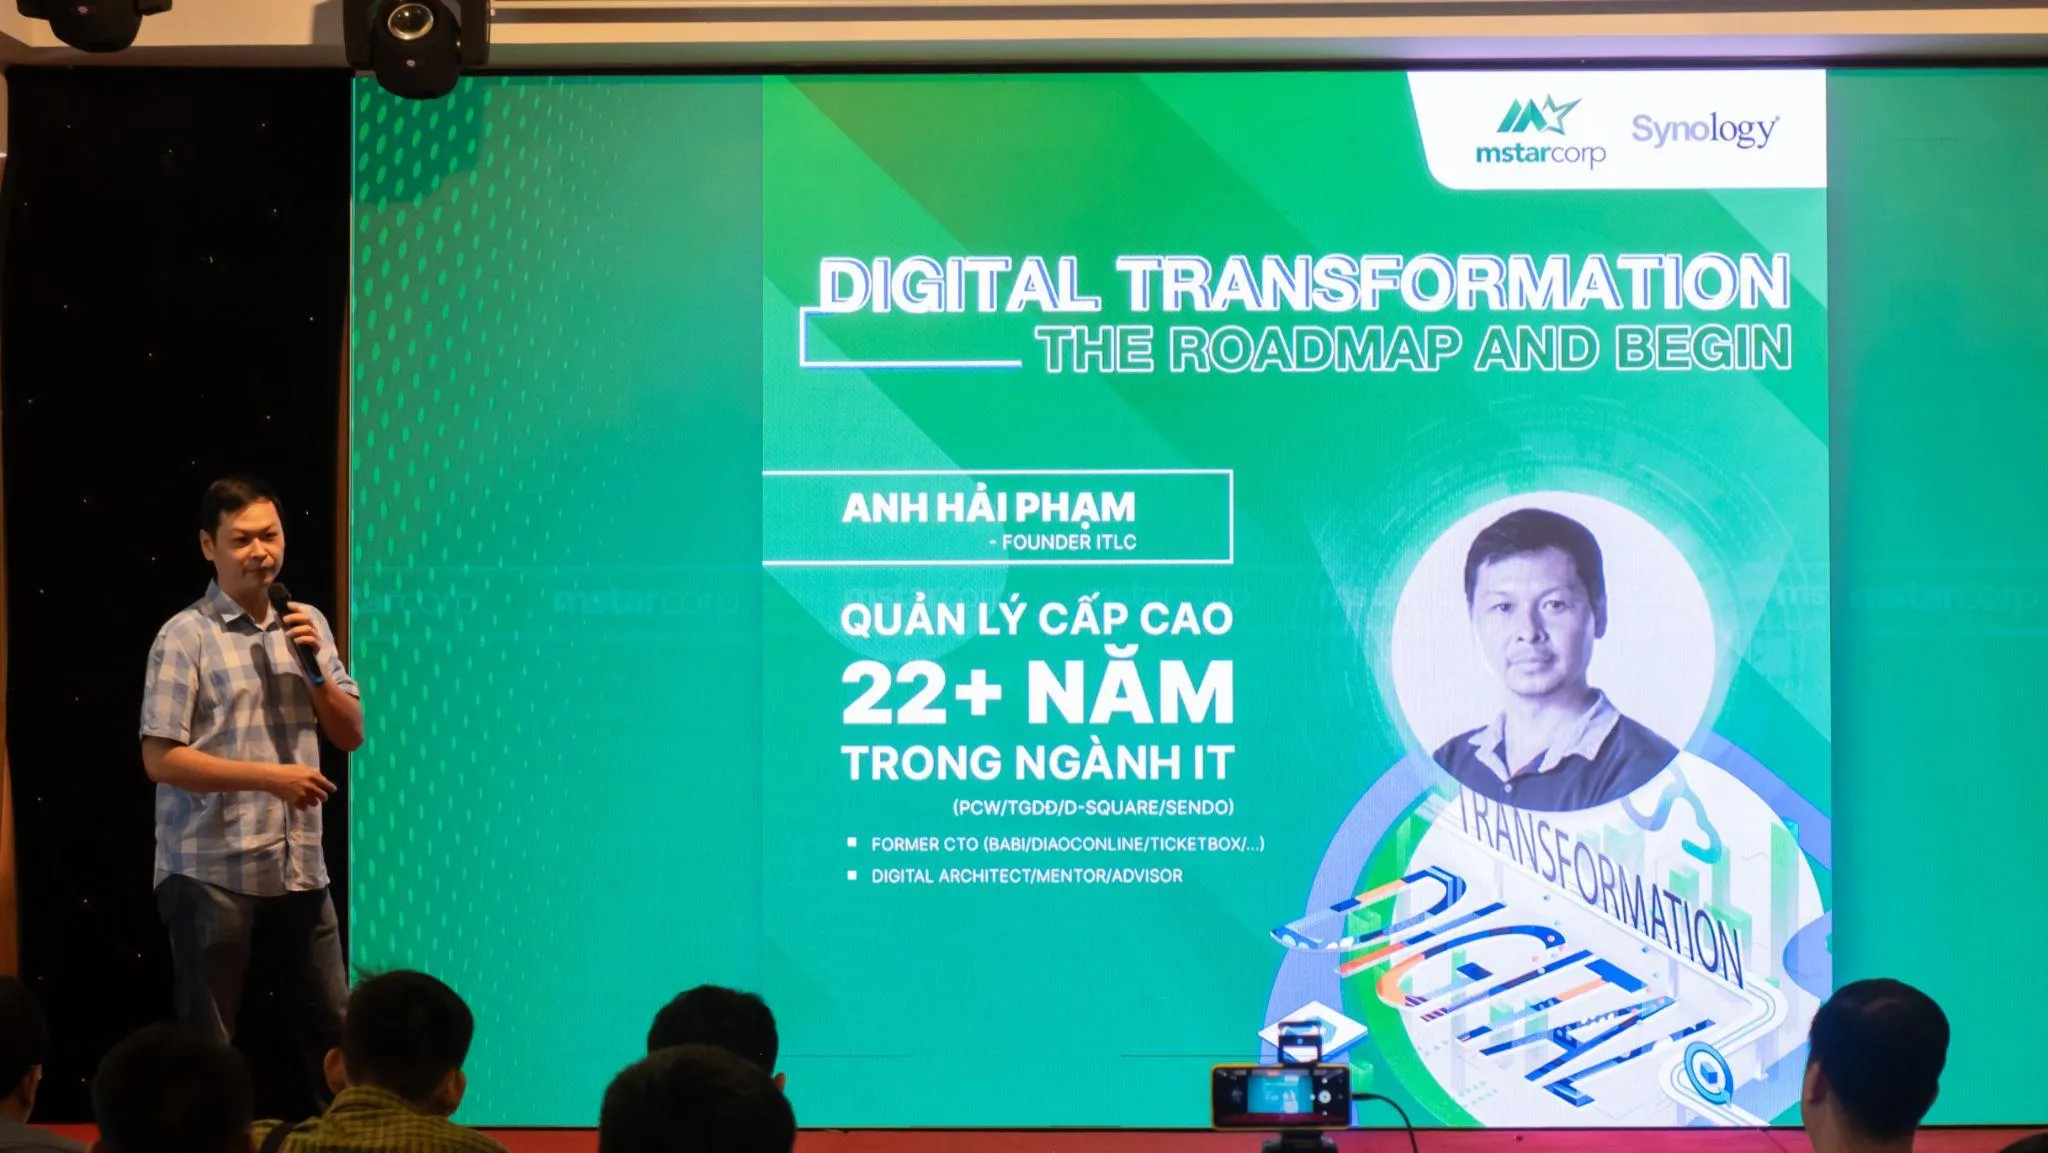 Mstar Corp gây ấn tượng với sự kiện chuyển đổi số “Digital Transformation: The Roadmap and Begin”